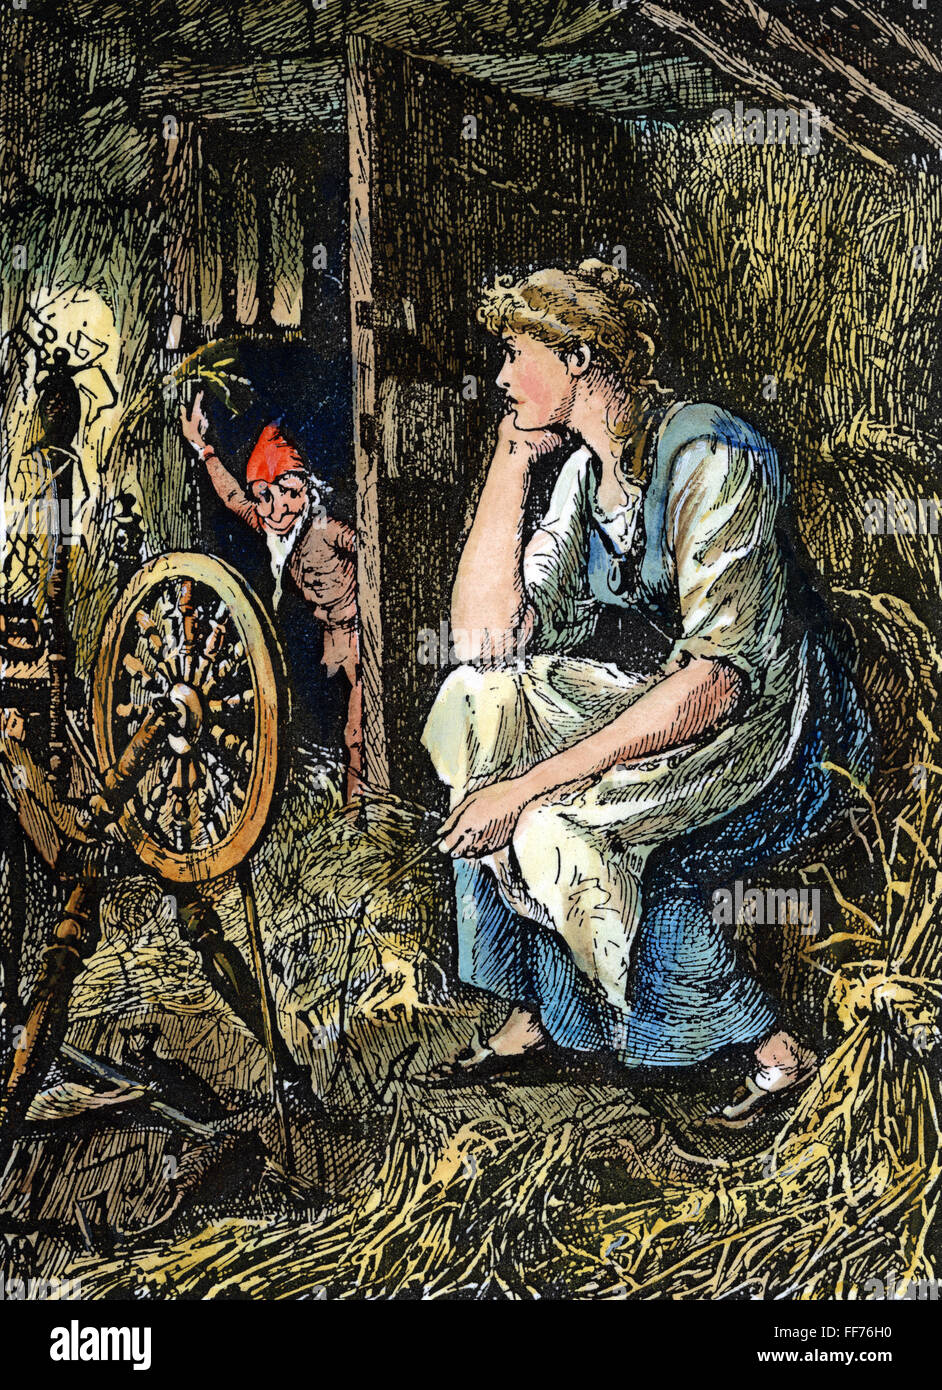 RUMPELSTILZCHEN, 1891. /nRumpelstiltskin und die Müllerstochter. Zeichnung, 1891, von Henry J. Ford für das Märchen von Brüder Grimm. Stockfoto